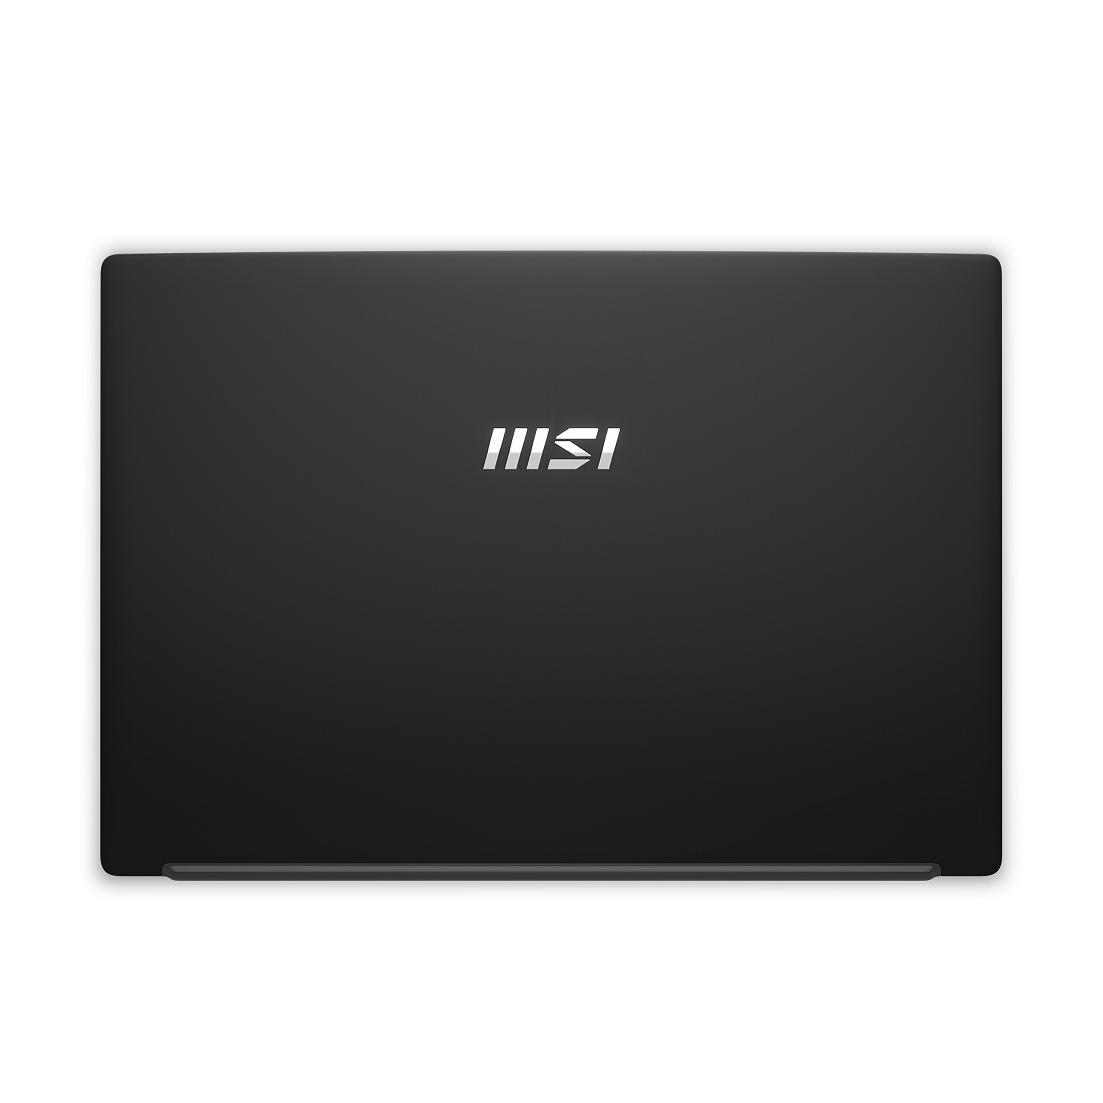 MSI Laptop Modern 14 C11M-011VN|Intel i3-1115G4|Card UHD|Ram 8GB| Bộ nhớ 512GB SSD|Màn hình 14